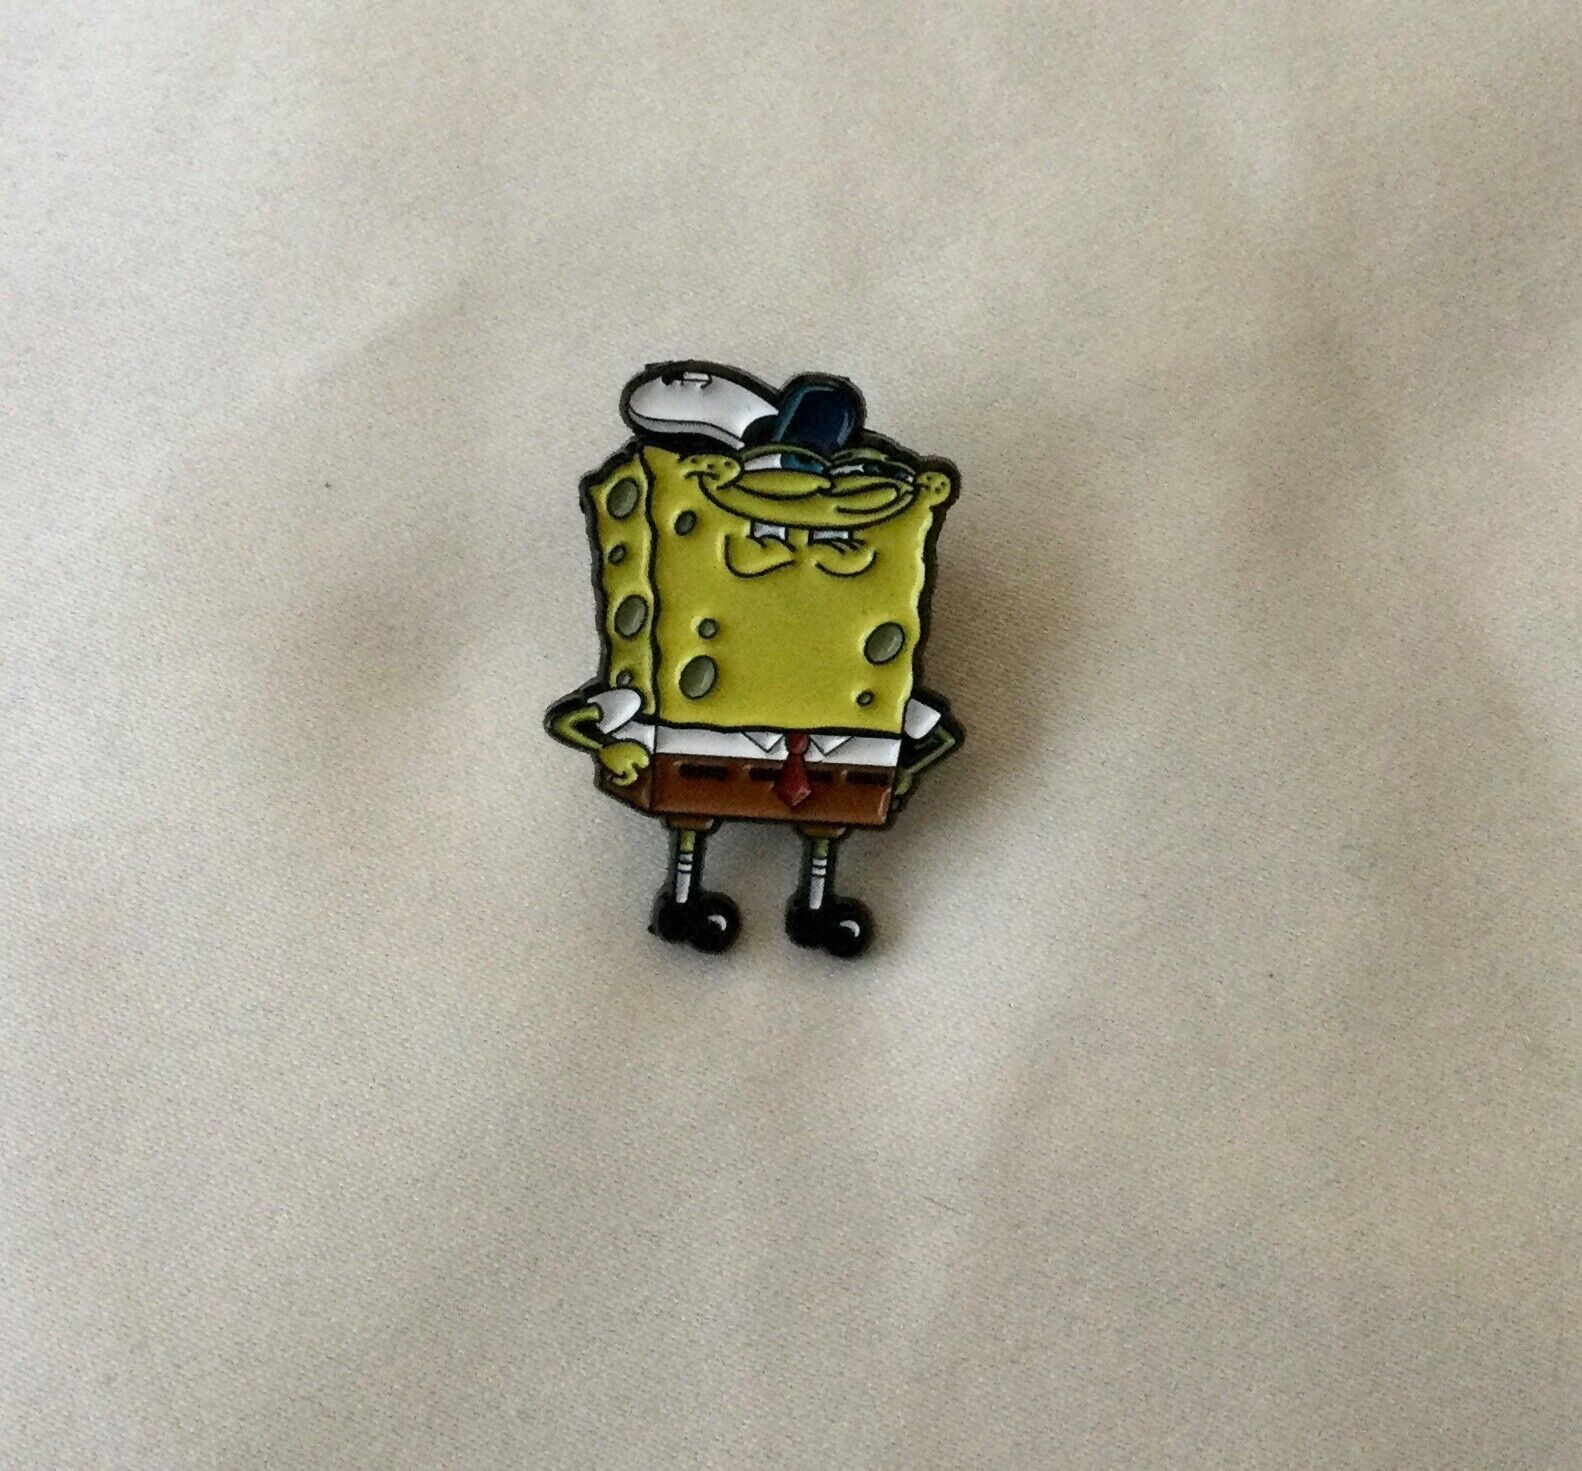 Spongebob Squarepants Rare Enamel Pin 